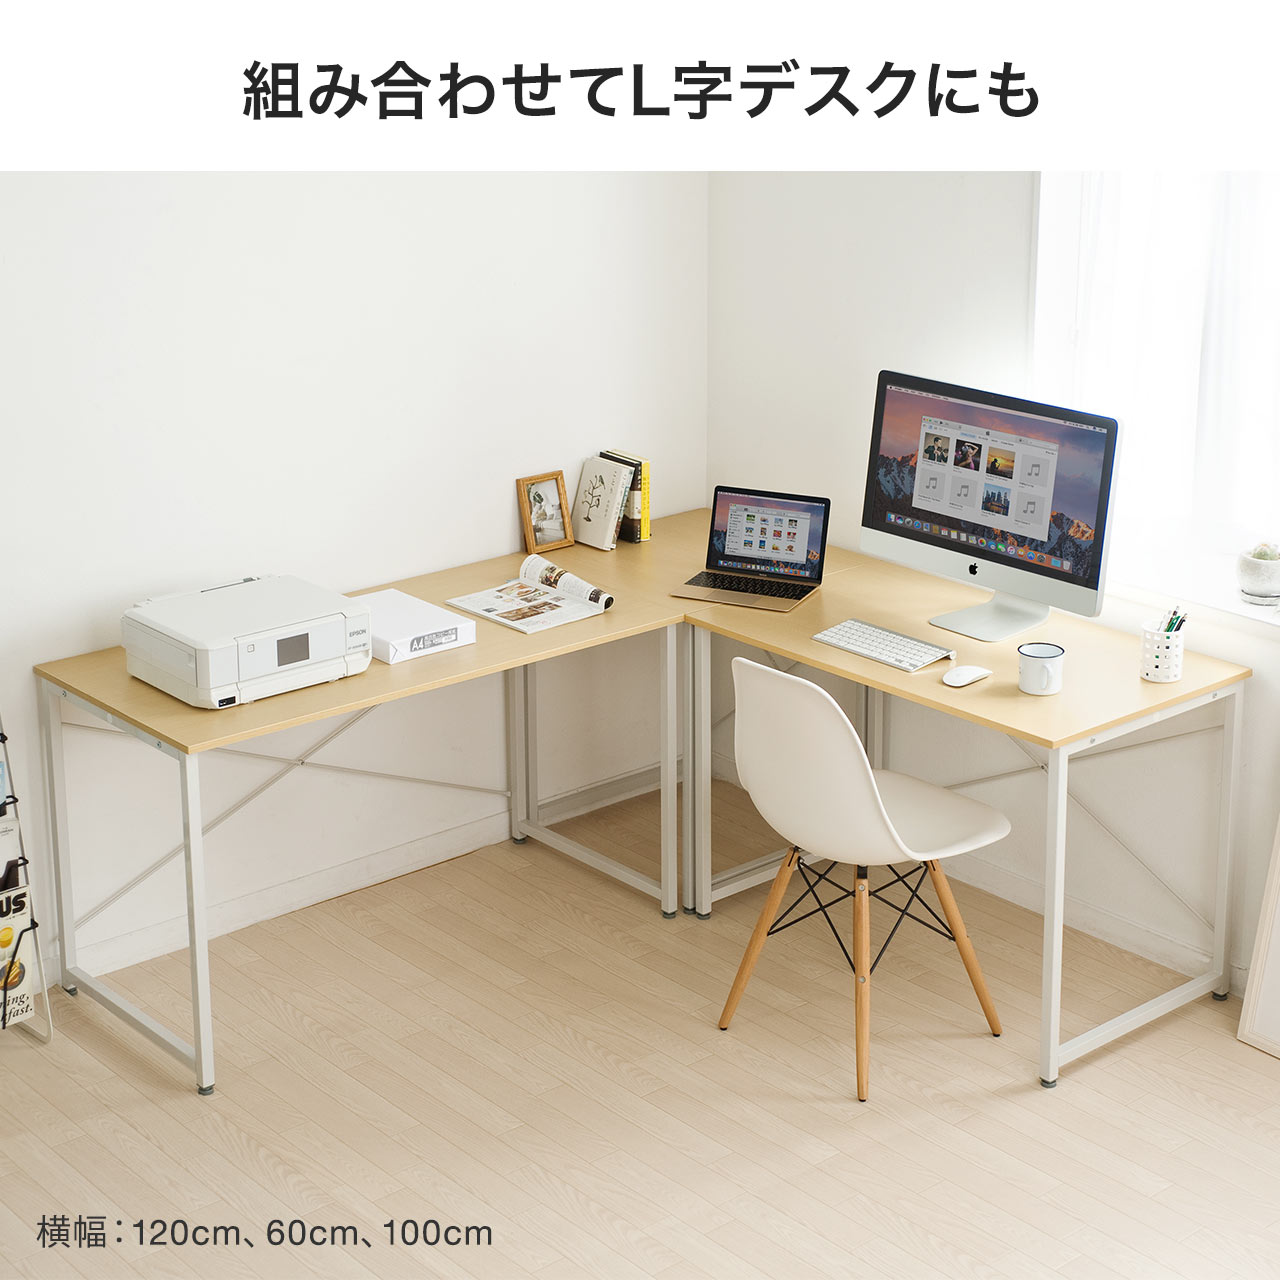 www.haoming.jp - ワークデスク シンプルホワイト 平机 作業台